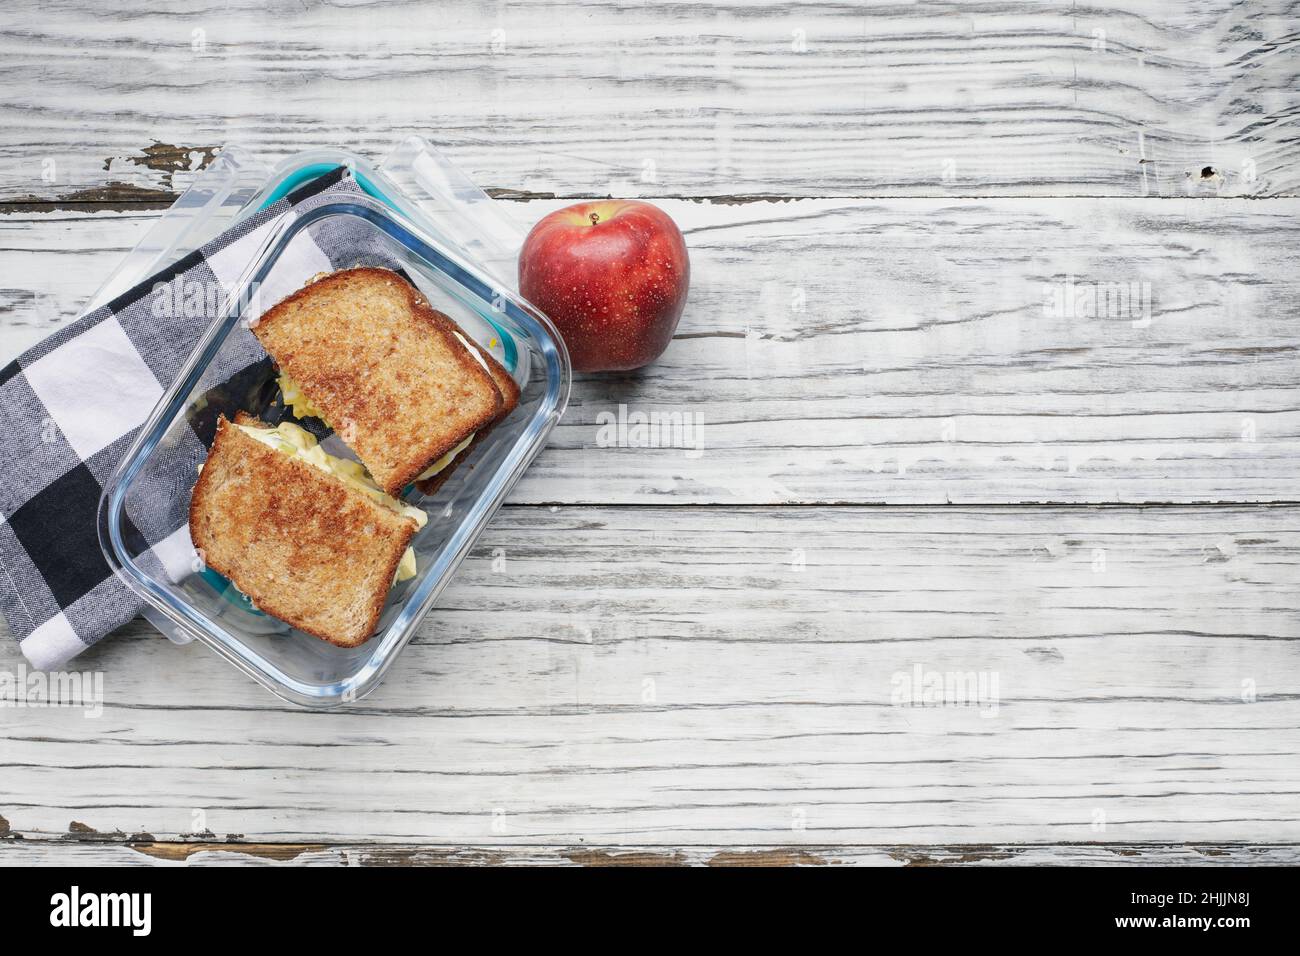 Lunchpaket mit frischem Apfel- und Hauseisalat-Sandwich mit geröstetem Weizenbrot in einem Glasbehälter. Gesunde vegetarische Ernährung Konzept. Stockfoto